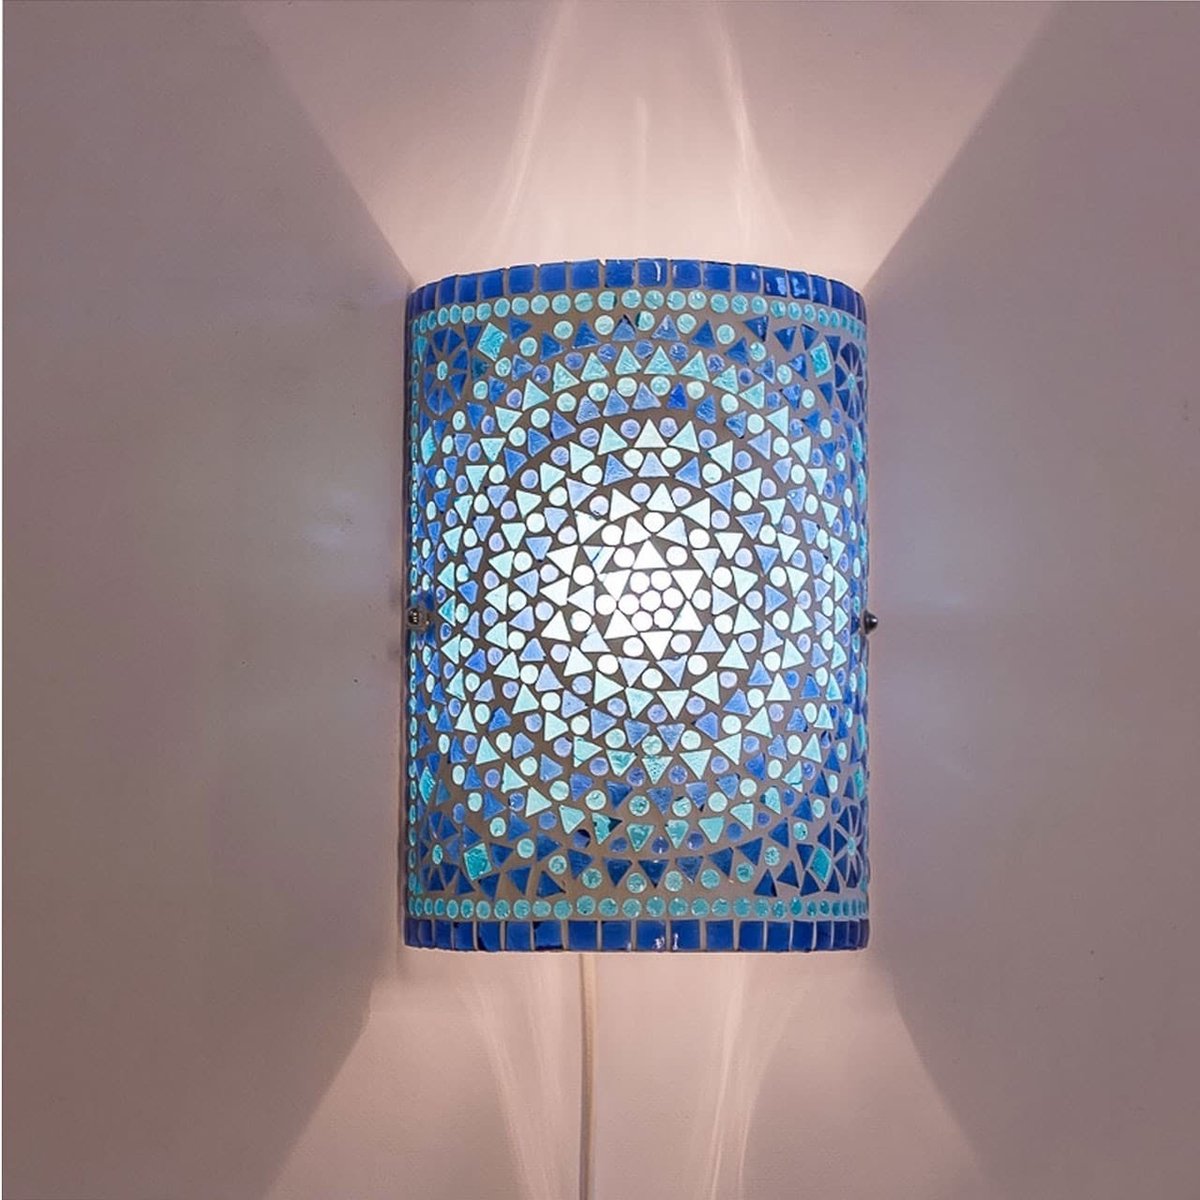 Oosterse mozaïek cilinder wandlamp | 26 cm | glas / metaal | blauw | woonkamer lamp | traditioneel / landelijk design